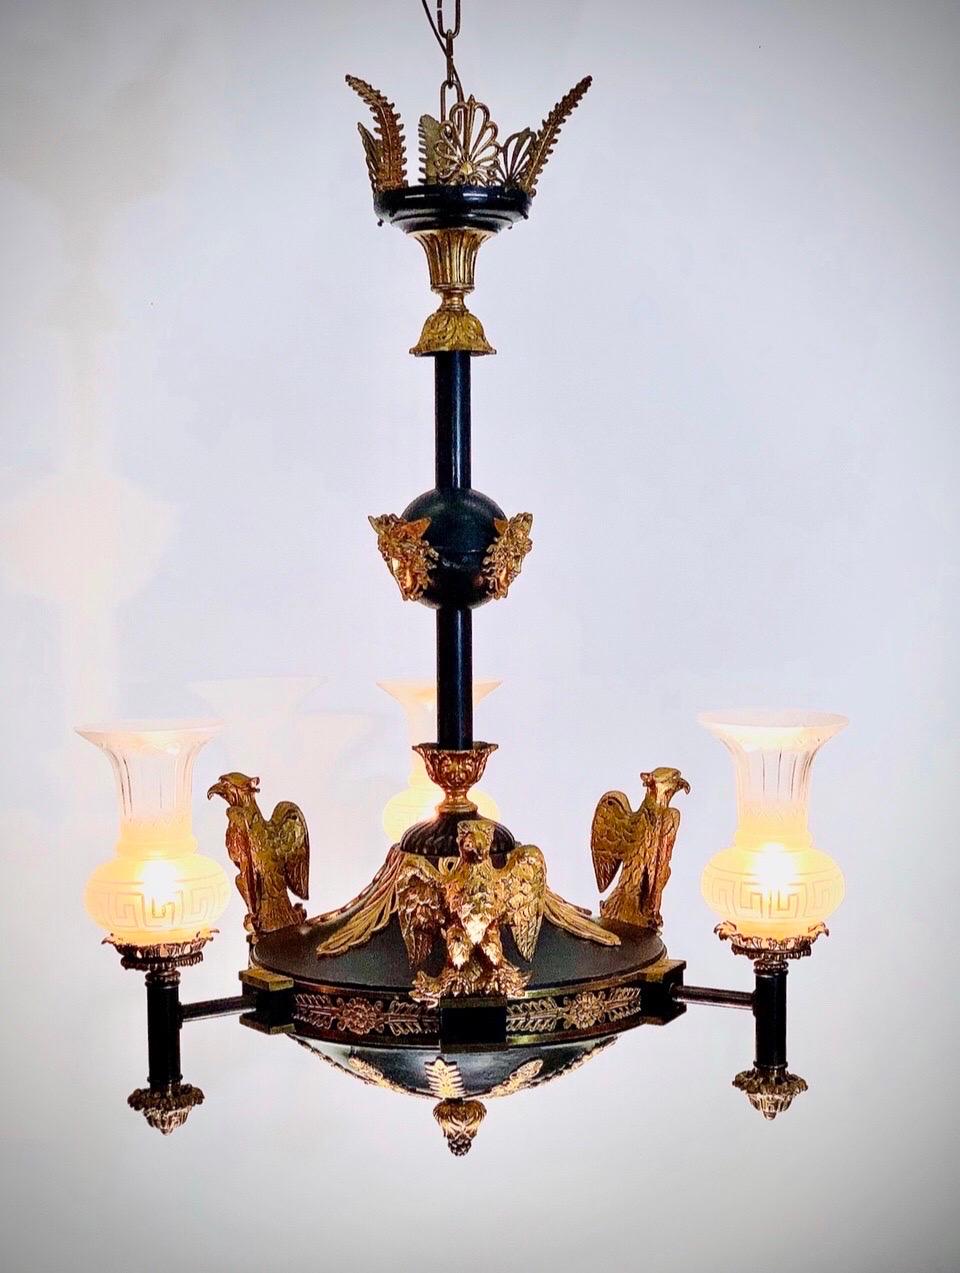 Diese prächtige 19. Jahrhundert Französisch Empire Eagle Mounted Bronze Gasolier / Kronleuchter hat drei Fackel dekoriert Lichter mit griechischen Schlüssel Trump Schirme. Dieser Grand Imperial Kronleuchter / Gassolier hat eine elegante zweifarbige